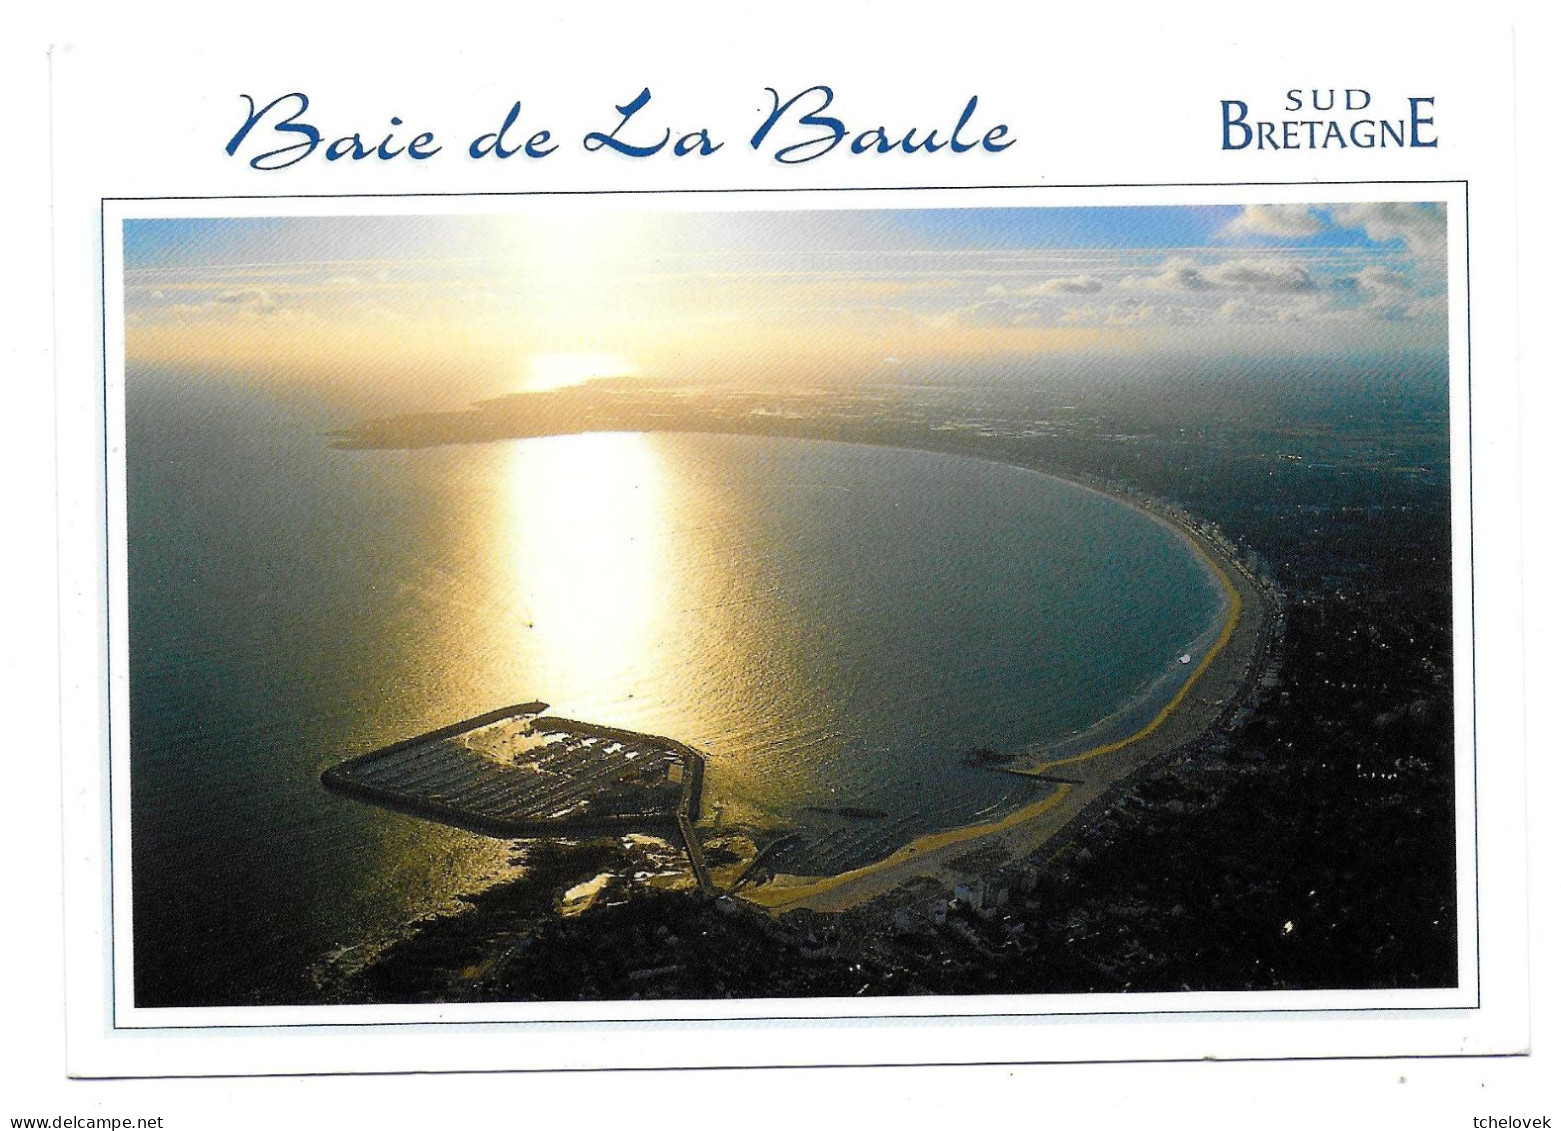 (44). Loire Atlantique. La Baule. Le Bois D'Amour & (2) & (3) - La Baule-Escoublac